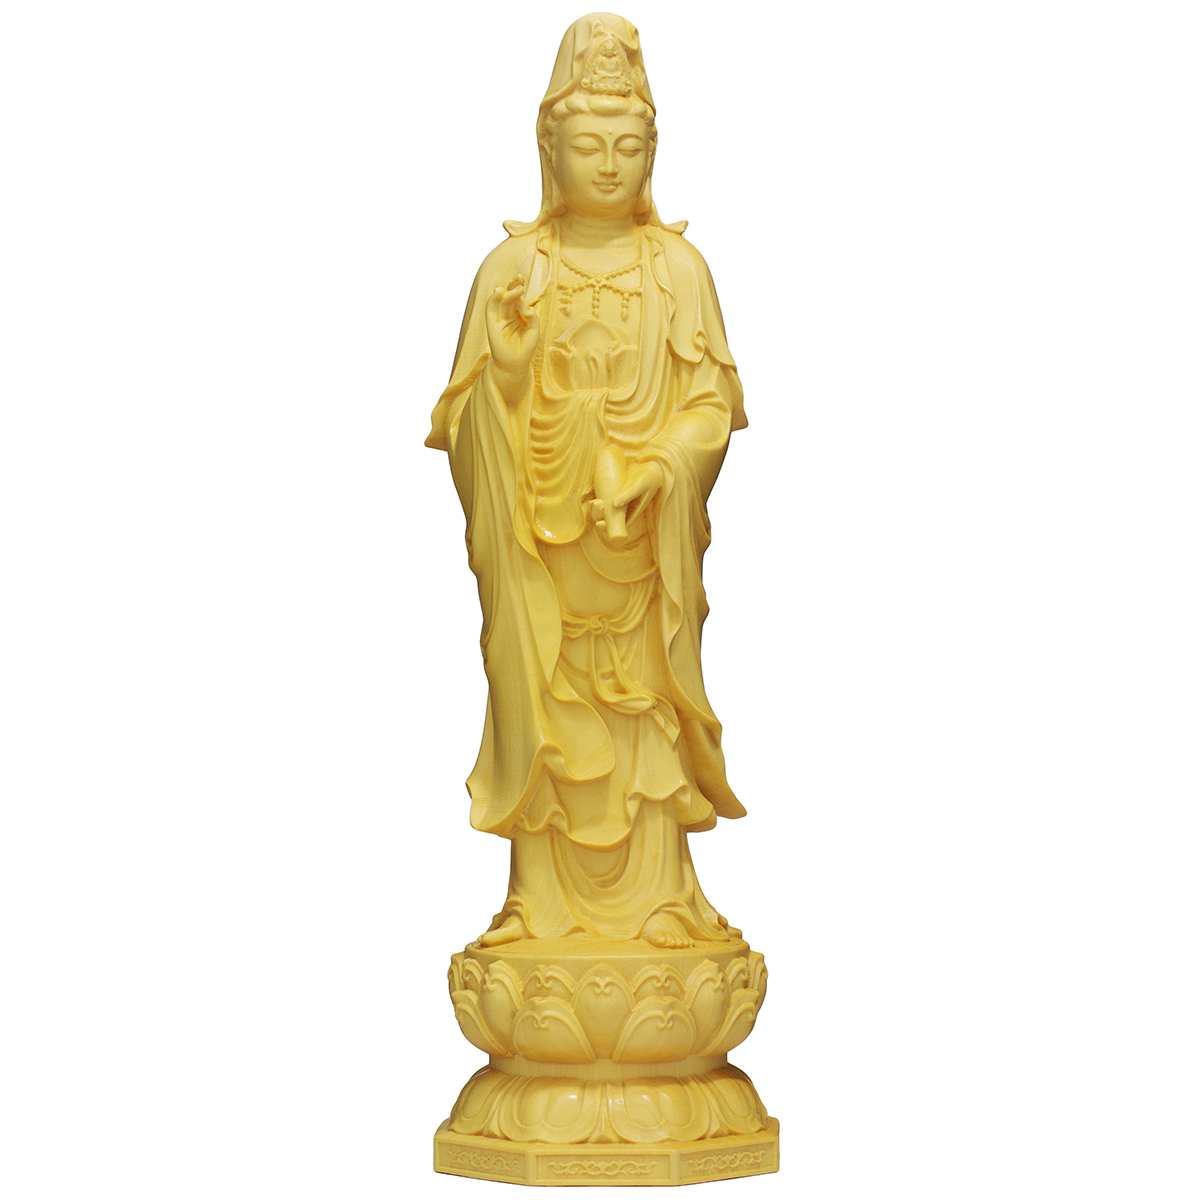 【新品】観音菩薩立像 20cm 天然木製(柘植ツゲ) 観音像 木彫仏像